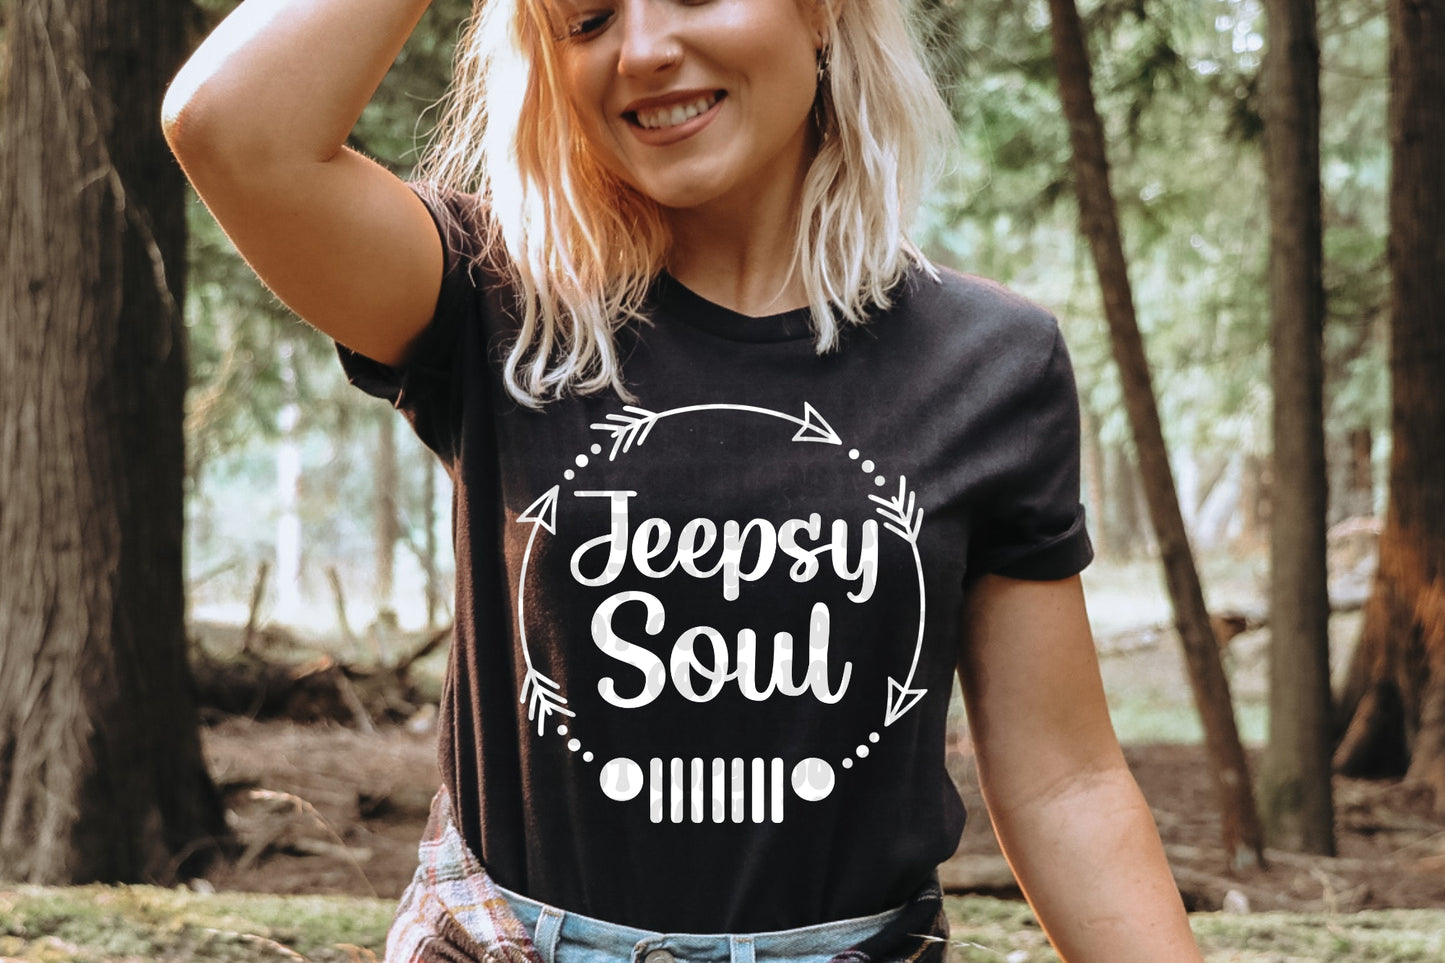 Jeepsy Soul boho